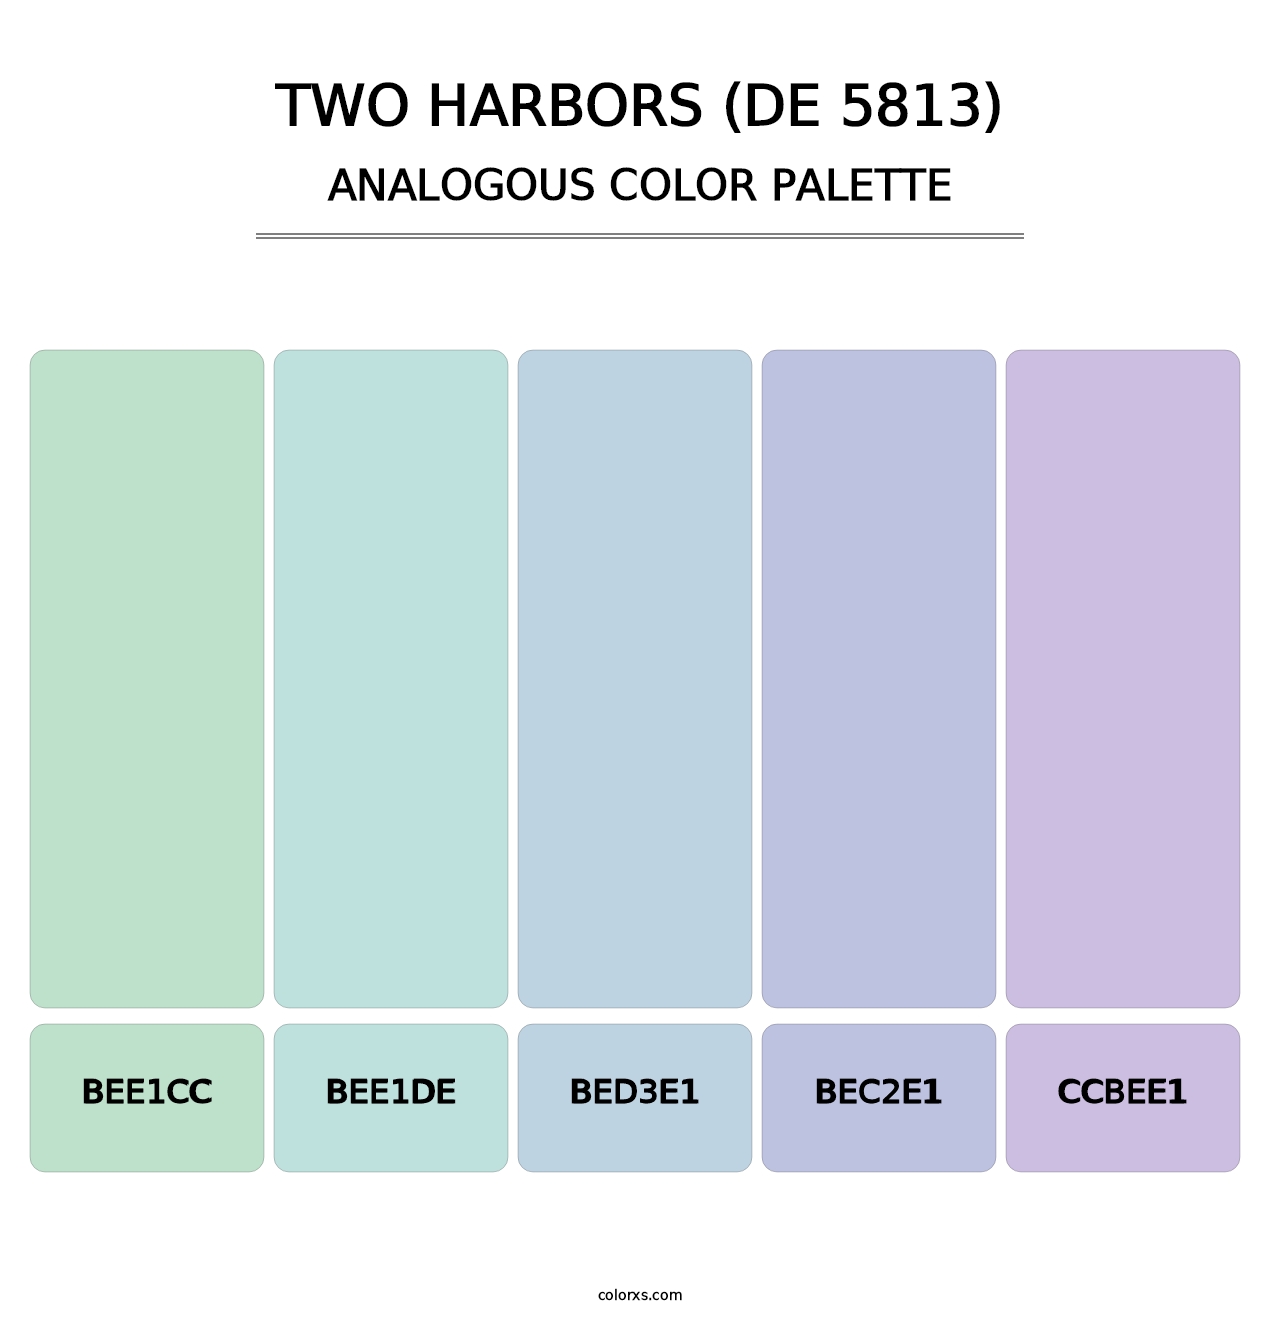 Two Harbors (DE 5813) - Analogous Color Palette